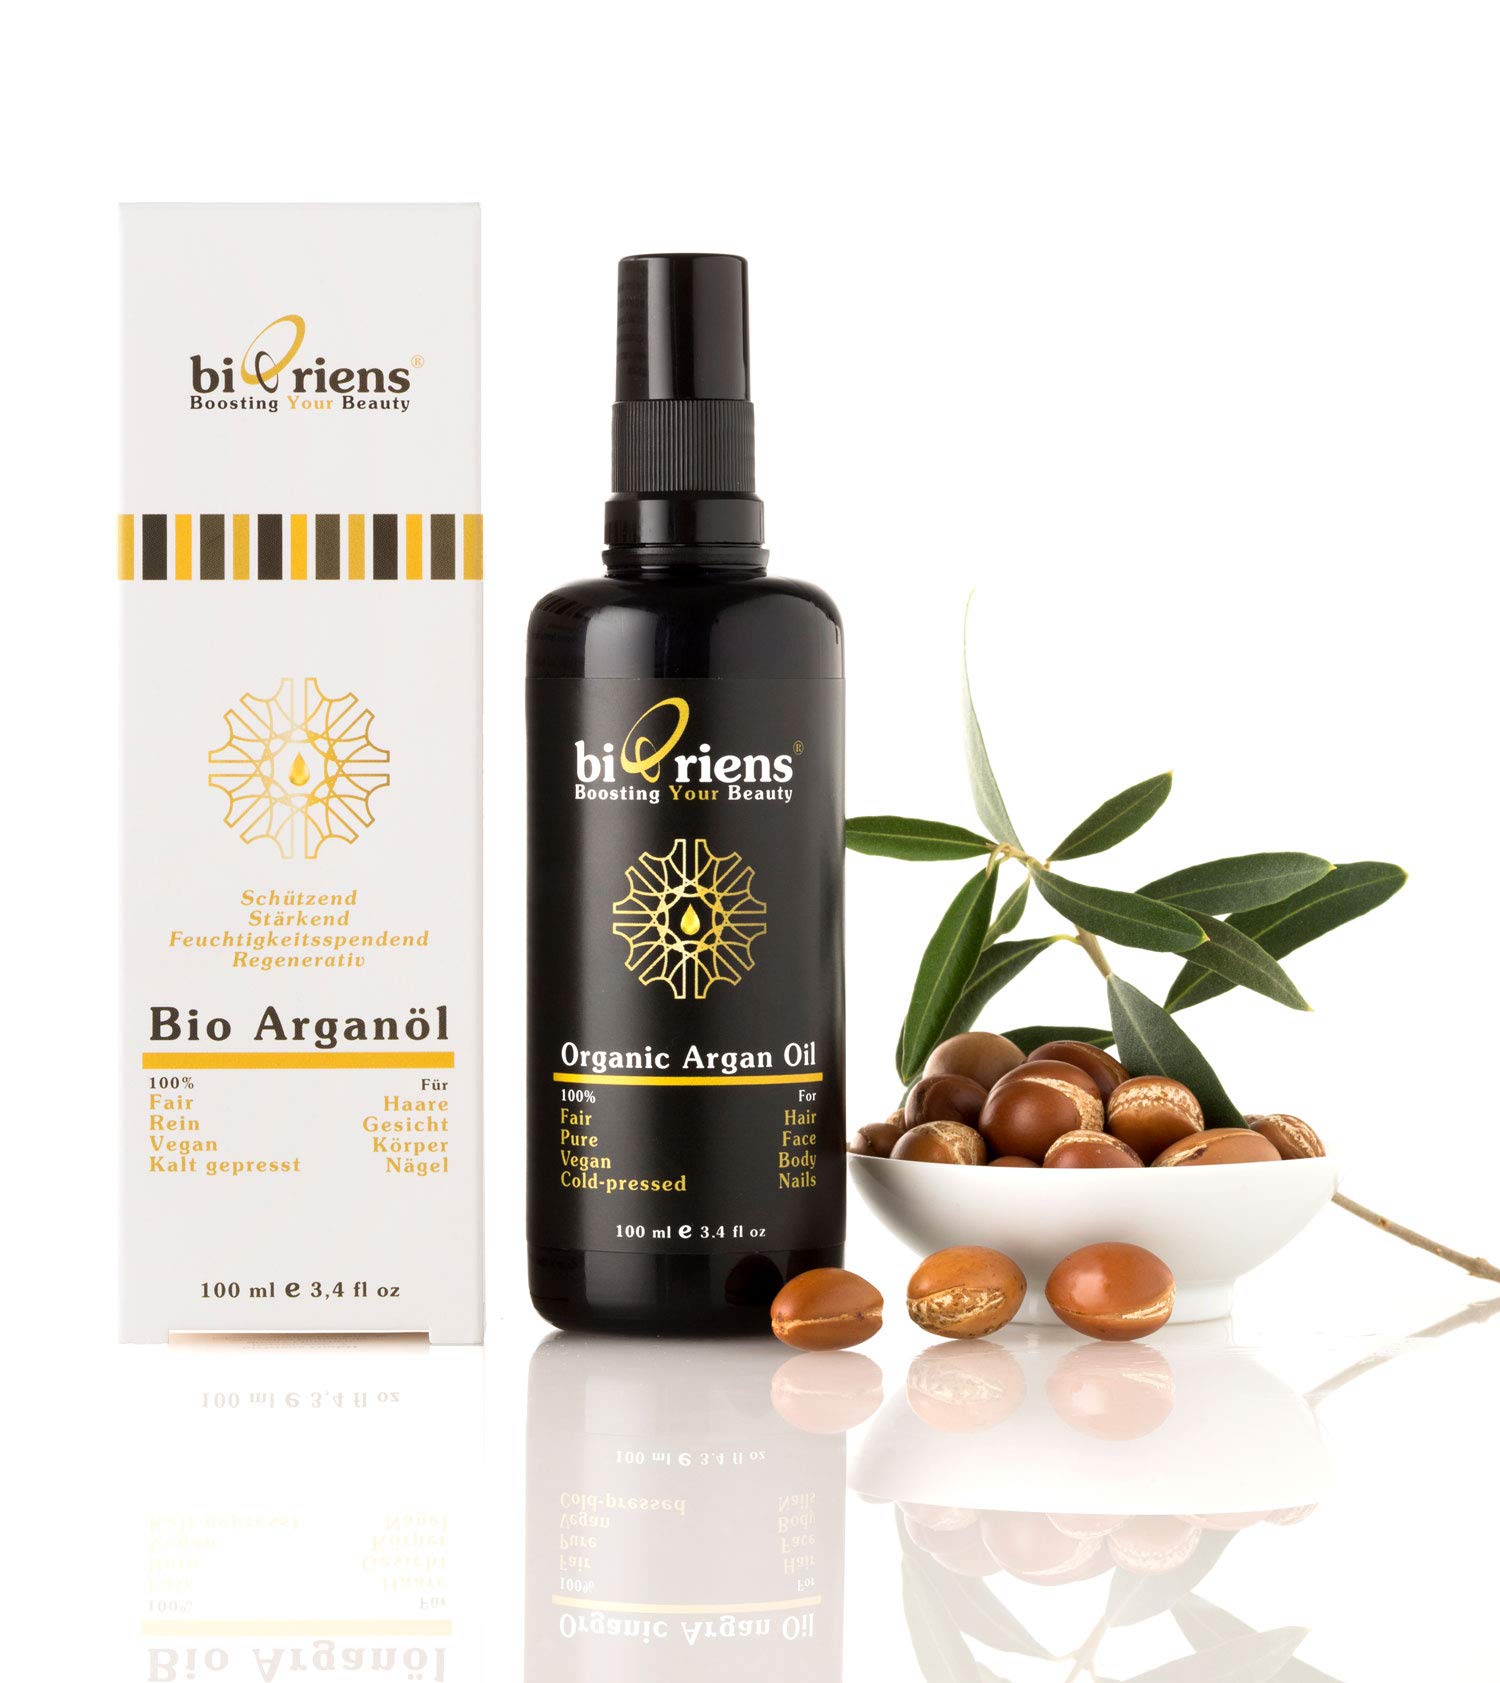 Bio Arganöl in Premium-Qualität. Anti-Aging Naturkosmetik für Haare, Gesicht, Körper und Nägel von biOriens cosmetics: 100% Fair, Rein, Vegan und Kalt gepresst - 100 ml